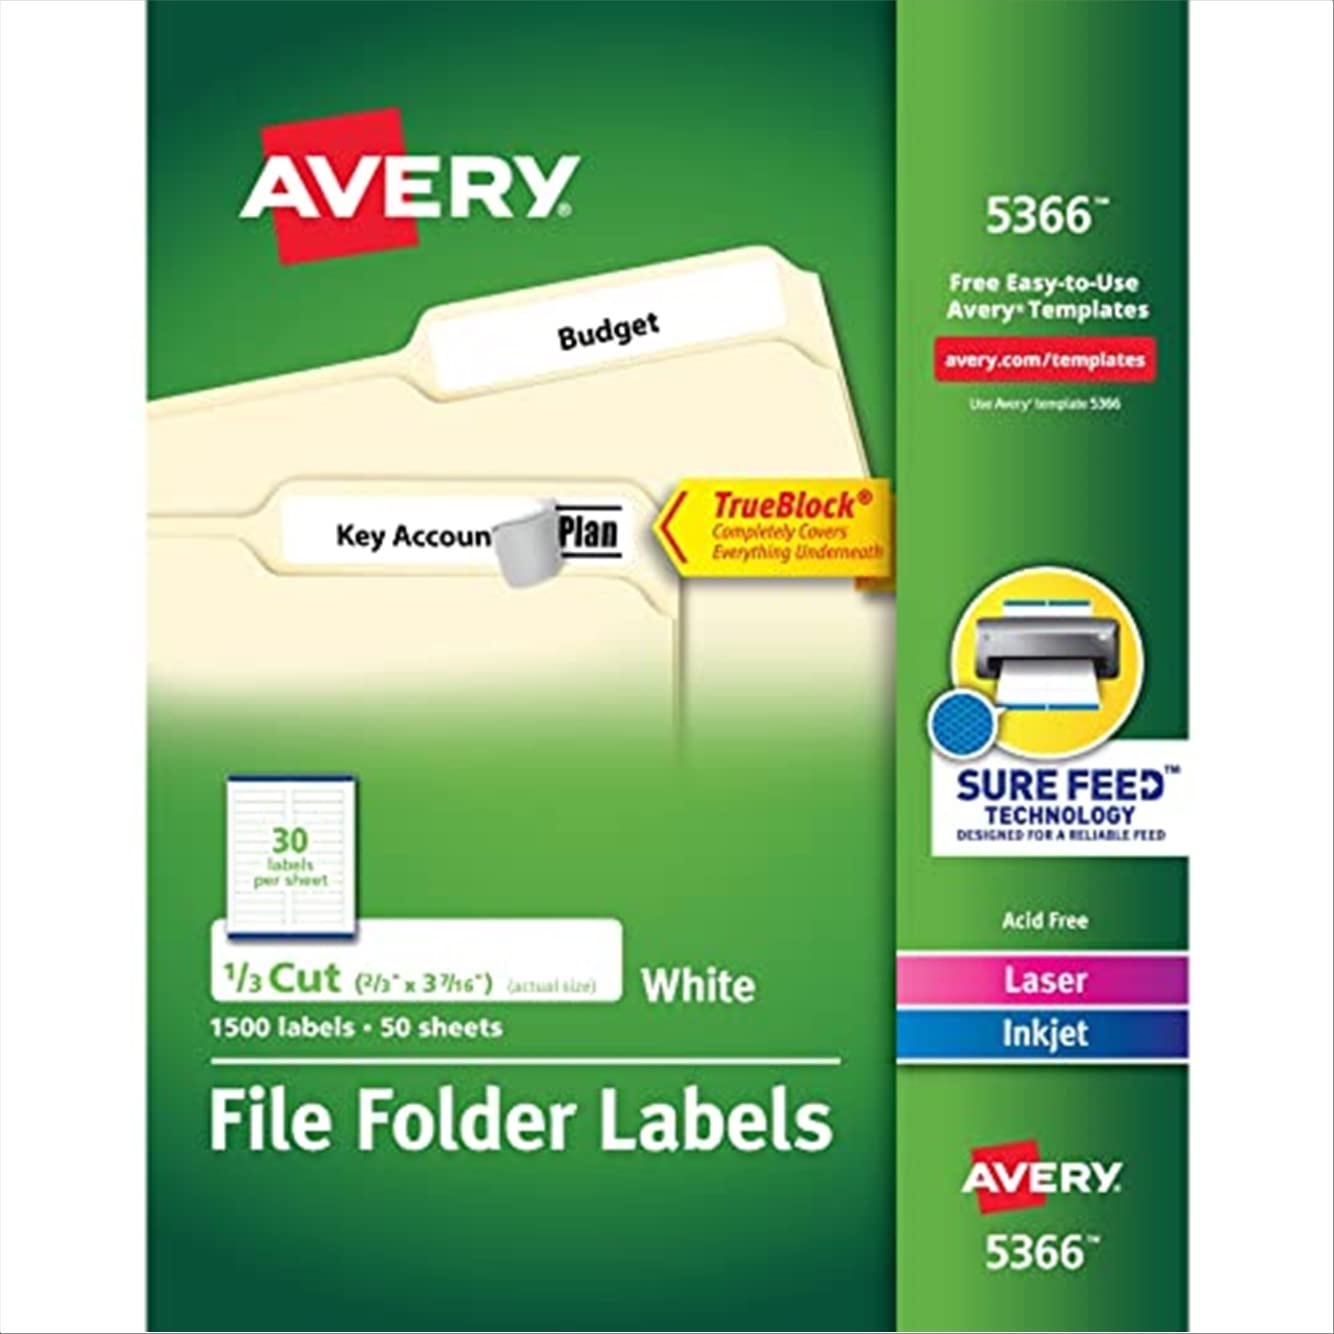  Avery ट्रूब्लॉक टेक्नोलॉजी के साथ लेजर और इंक जेट प्रिंटर के लिए फ़ाइल फ़ोल्डर...